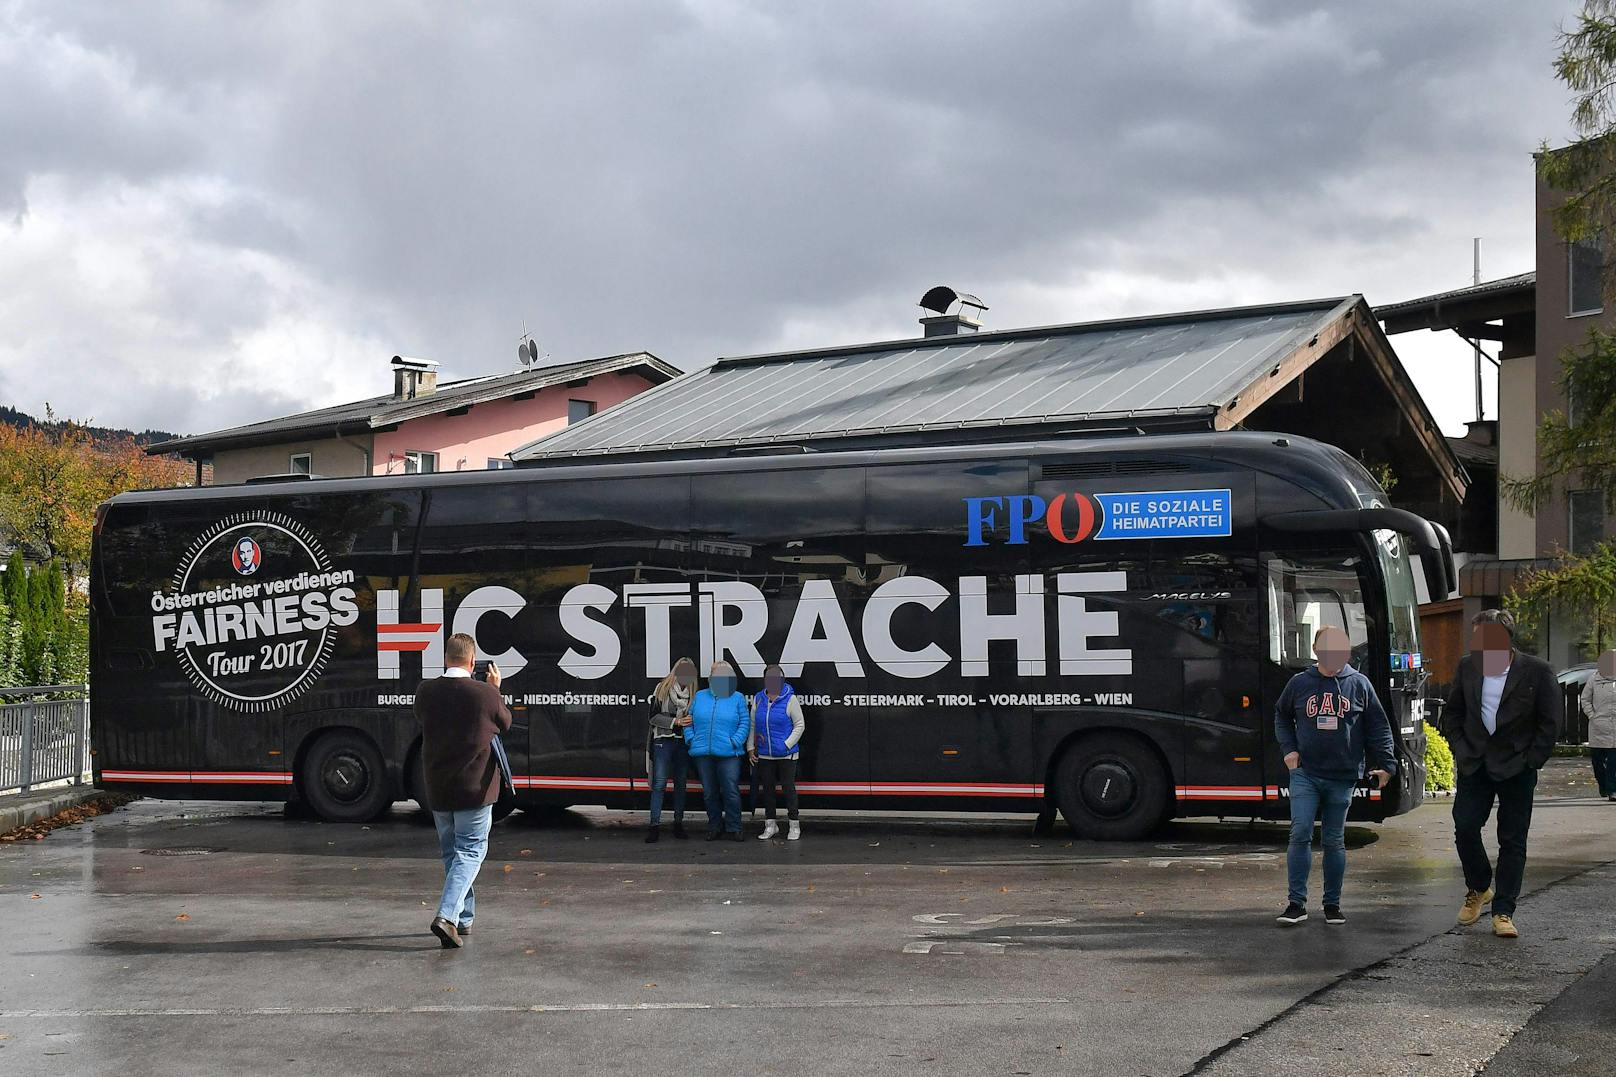 Straches Antwort: <em>"Du böser!“</em> Später bedankte sich Strache bei Stieglitz für den Bus (<em>"mit deinem Bus haben wir auch den Längsten"</em>), ...